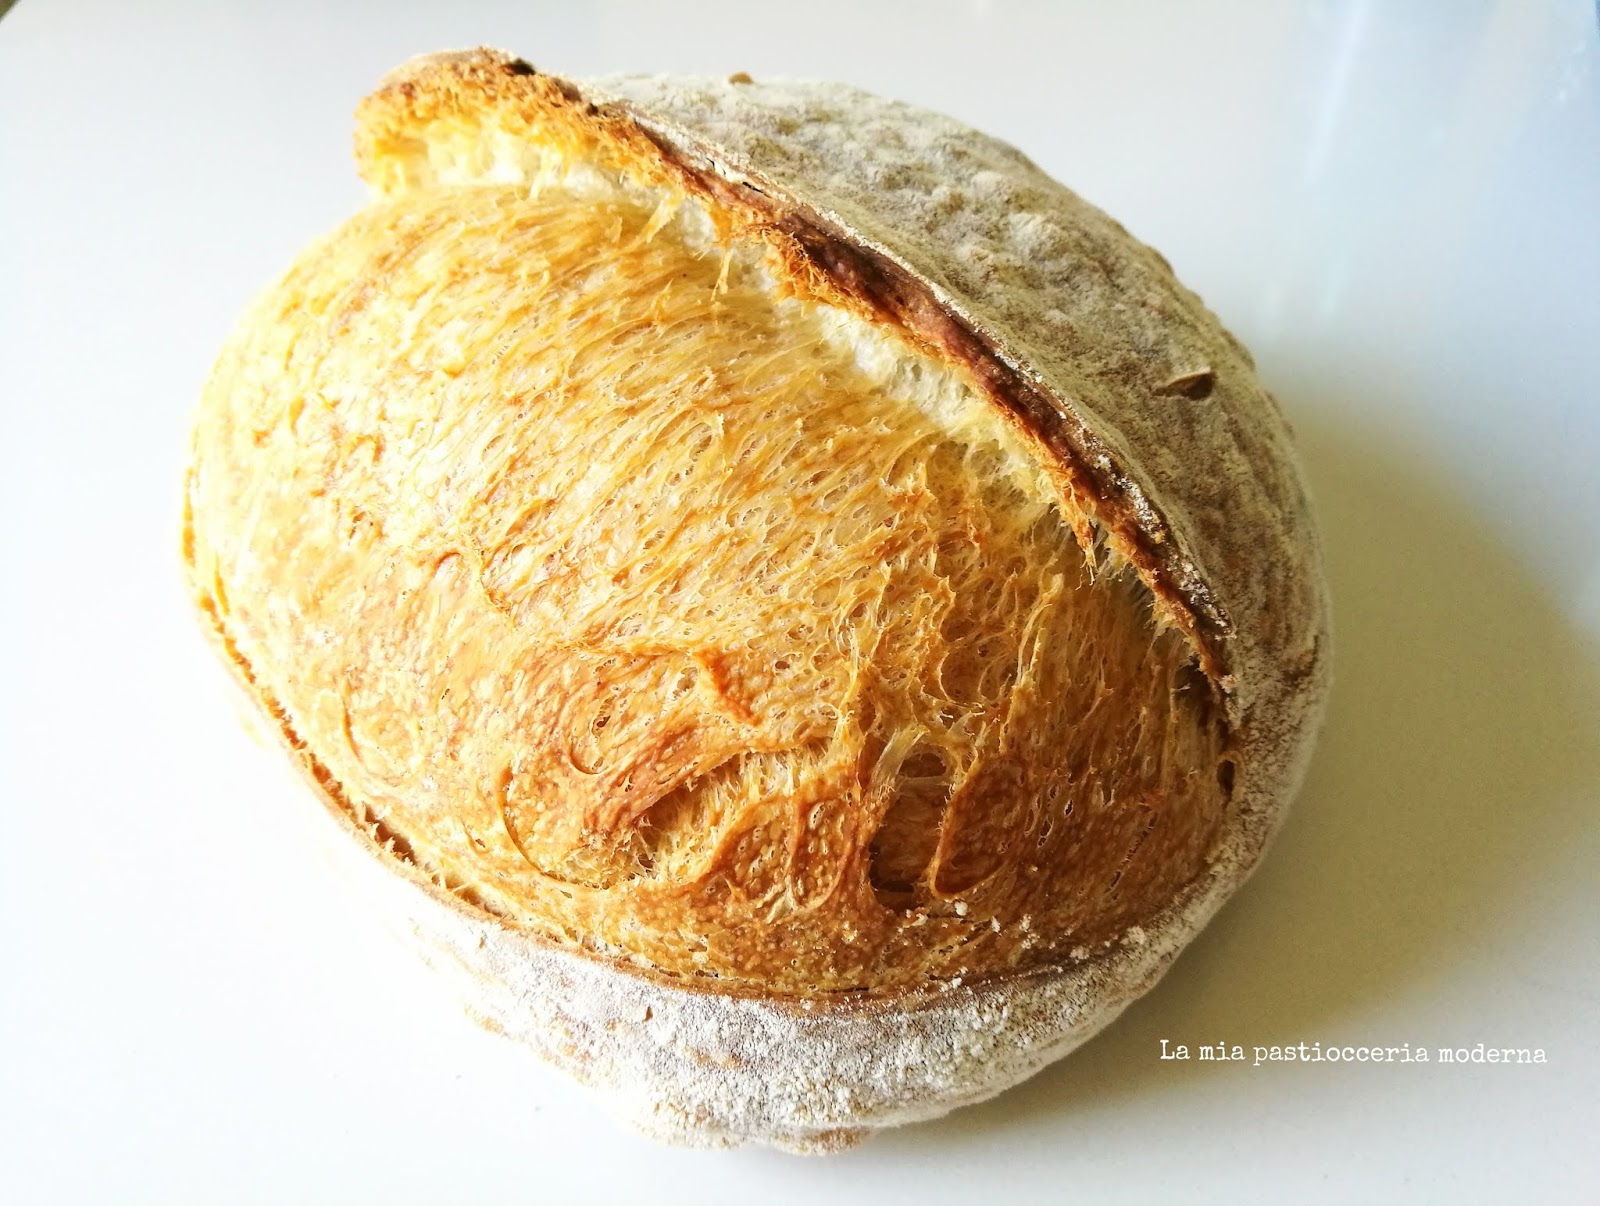 La mia pasticceria moderna: Pane a lunga lievitazione con licoli